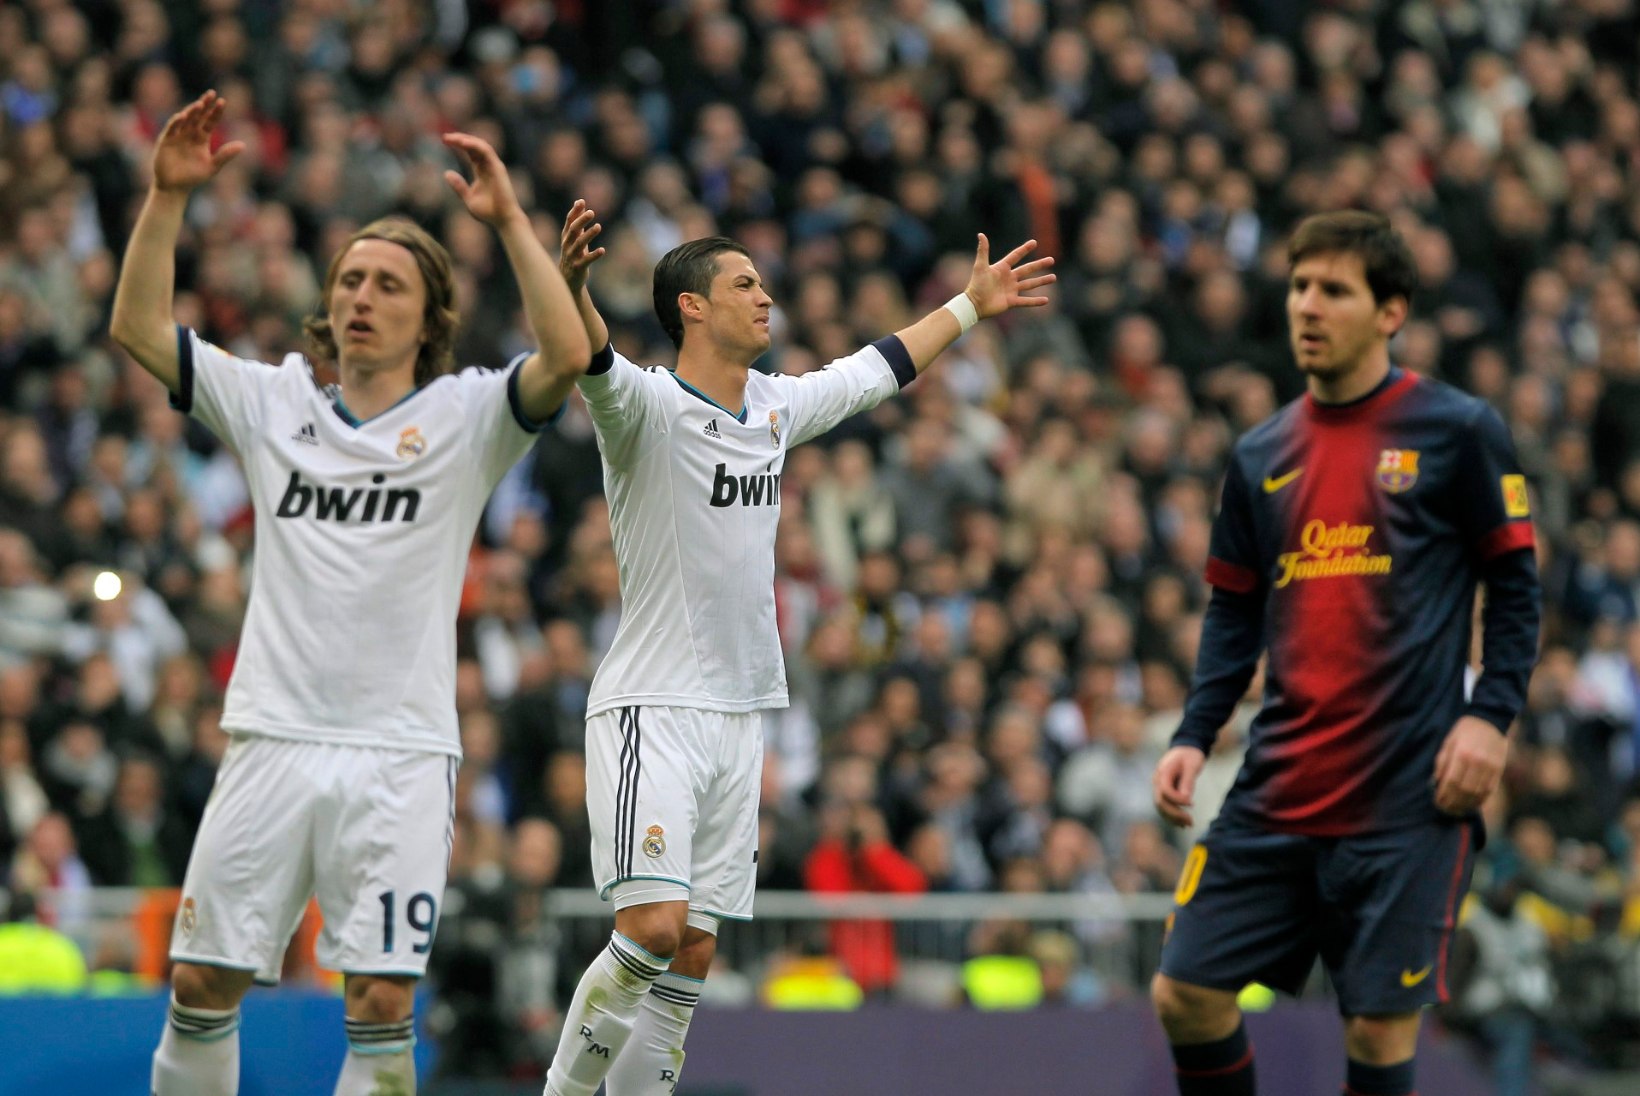 NII SEE JUHTUS | Sport 04.12: Ronaldo ja Messi valitsusaja lõpp tekitas vastakaid emotsioone